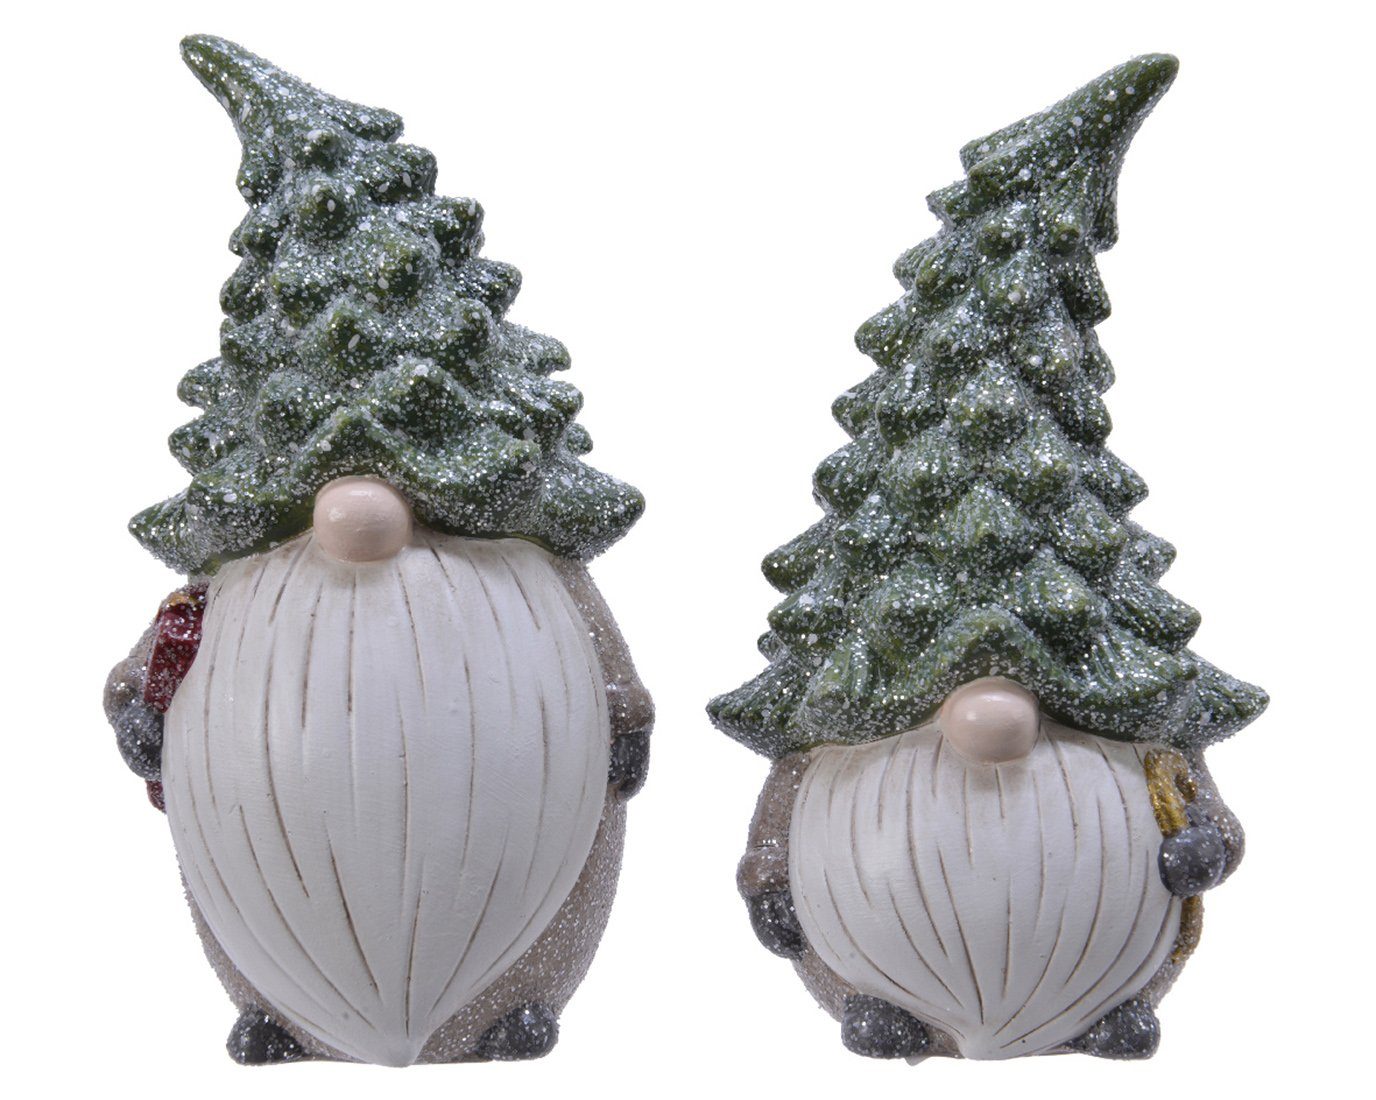 Decoris season decorations Weihnachtsfigur, Weihnachtsfigur Wichtel / Tanne Keramik 18cm grau / grün 1 Stück sort.